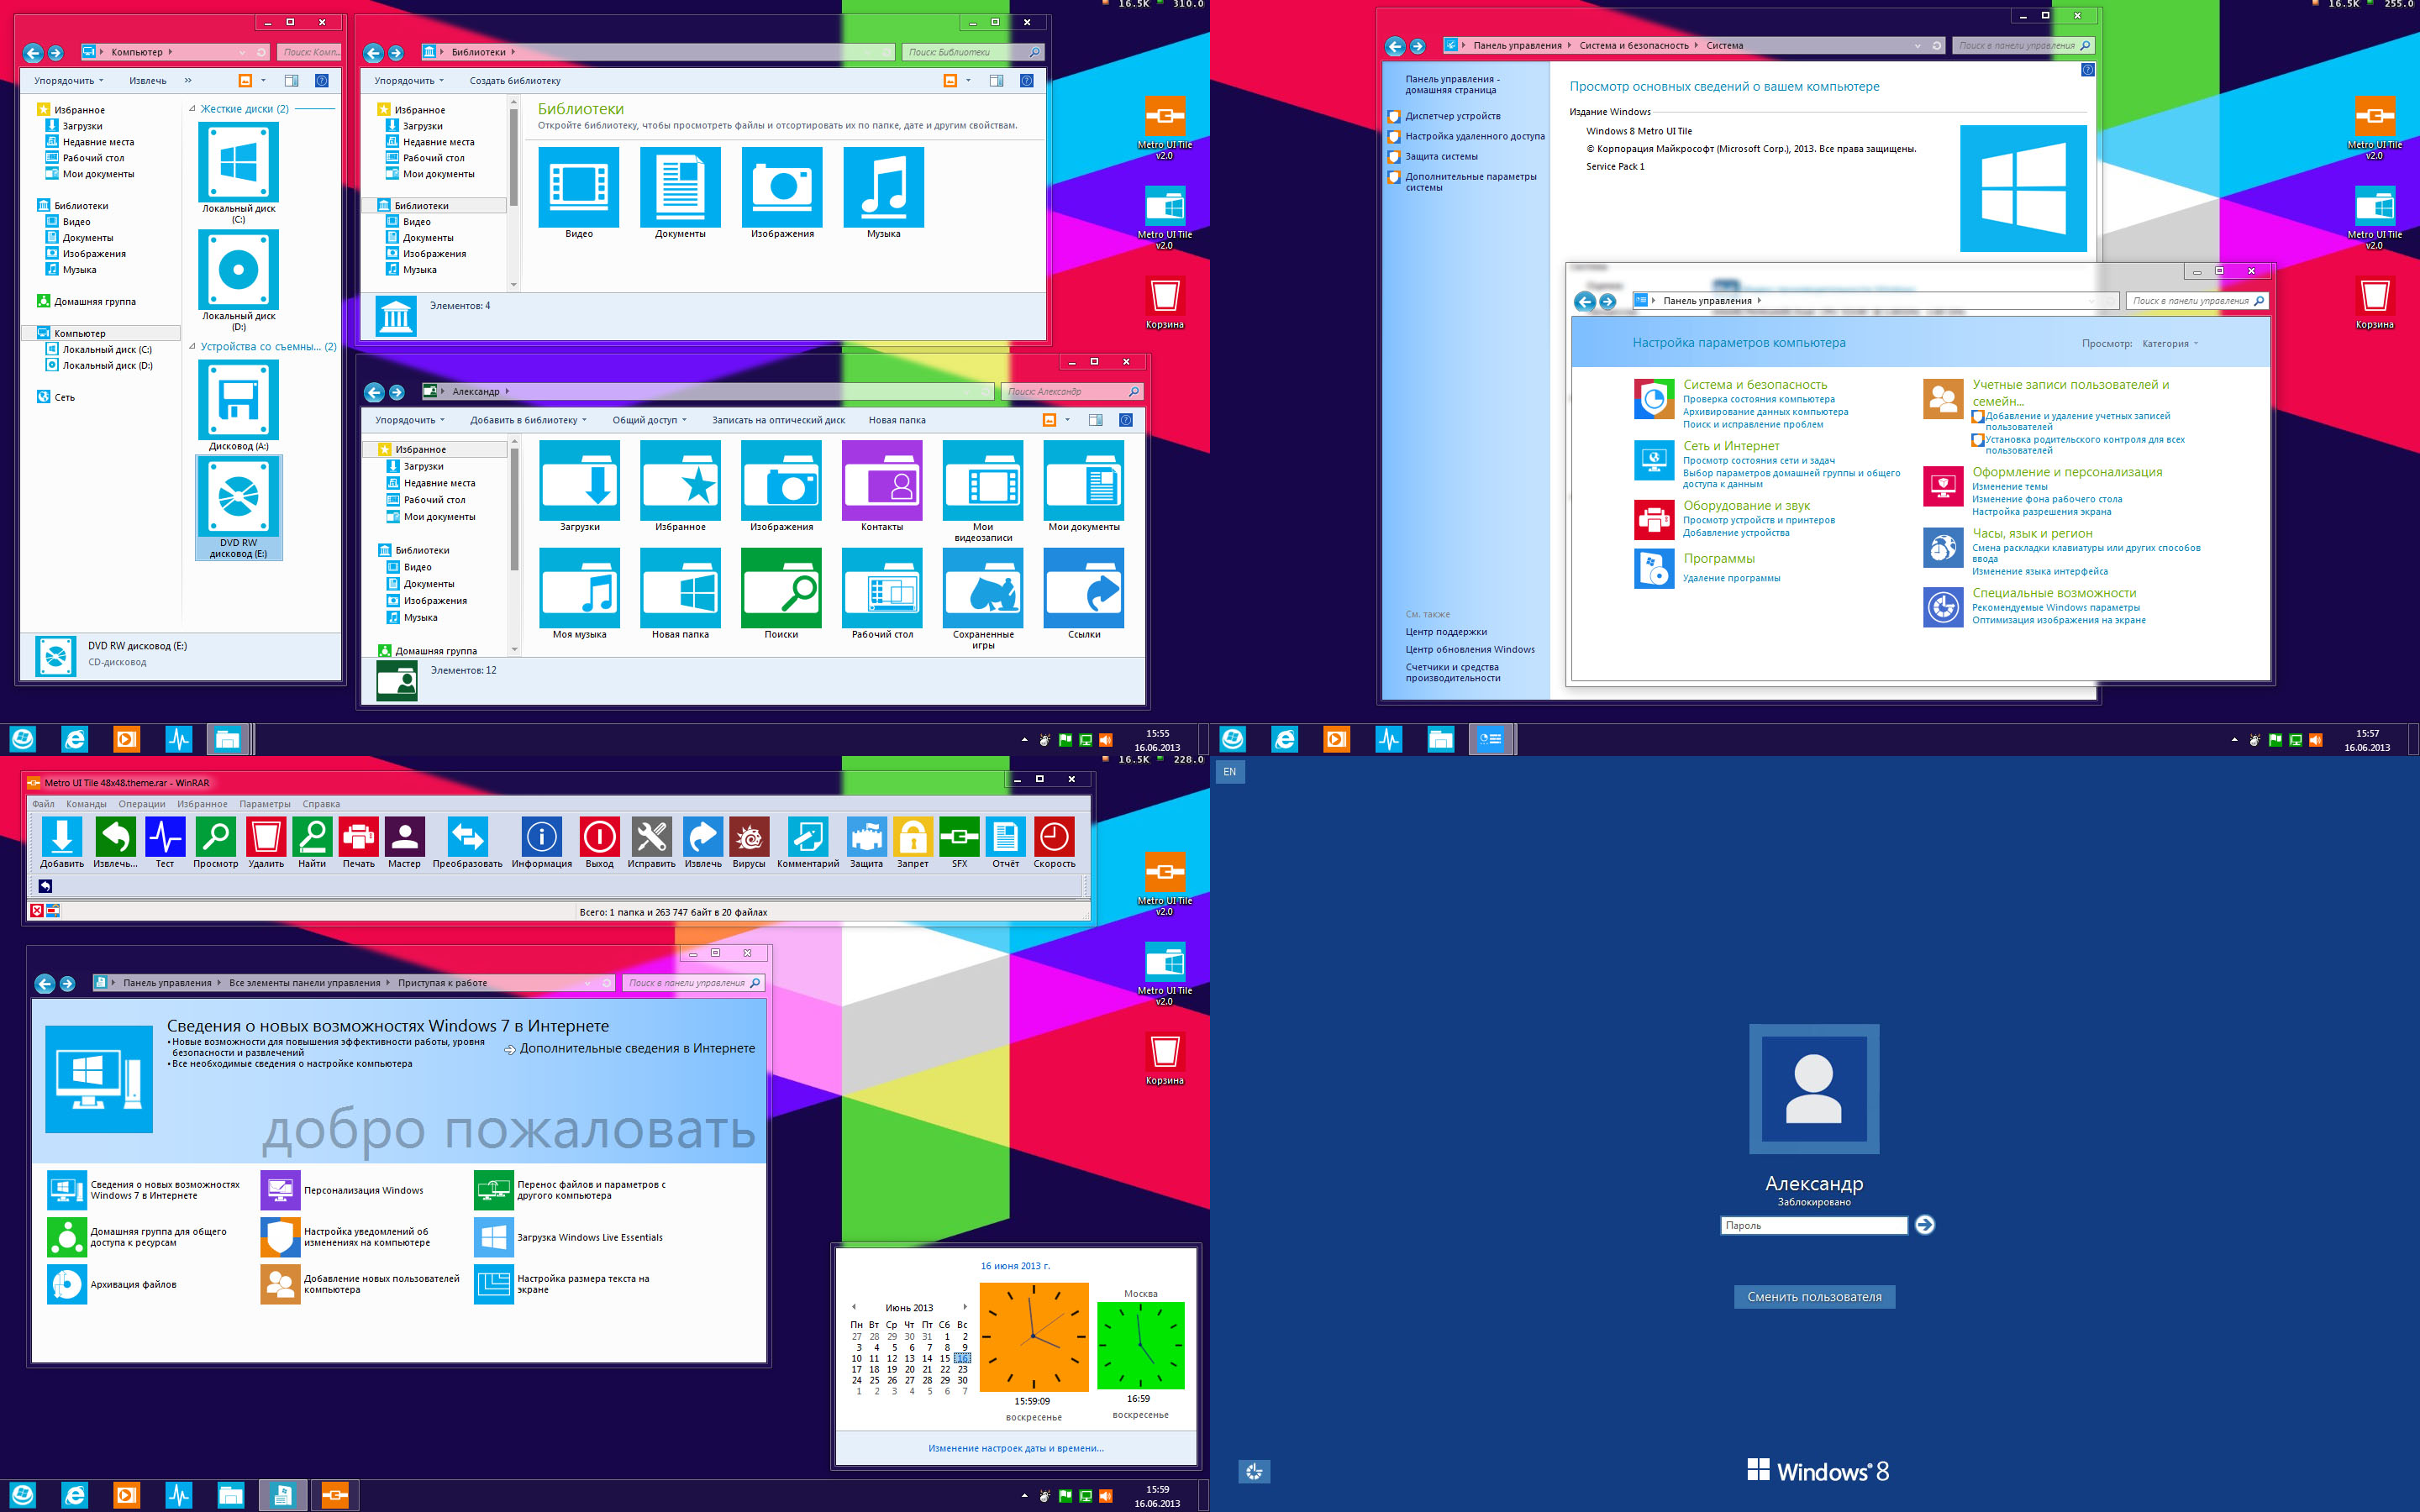 Windows Metro Tile Icons